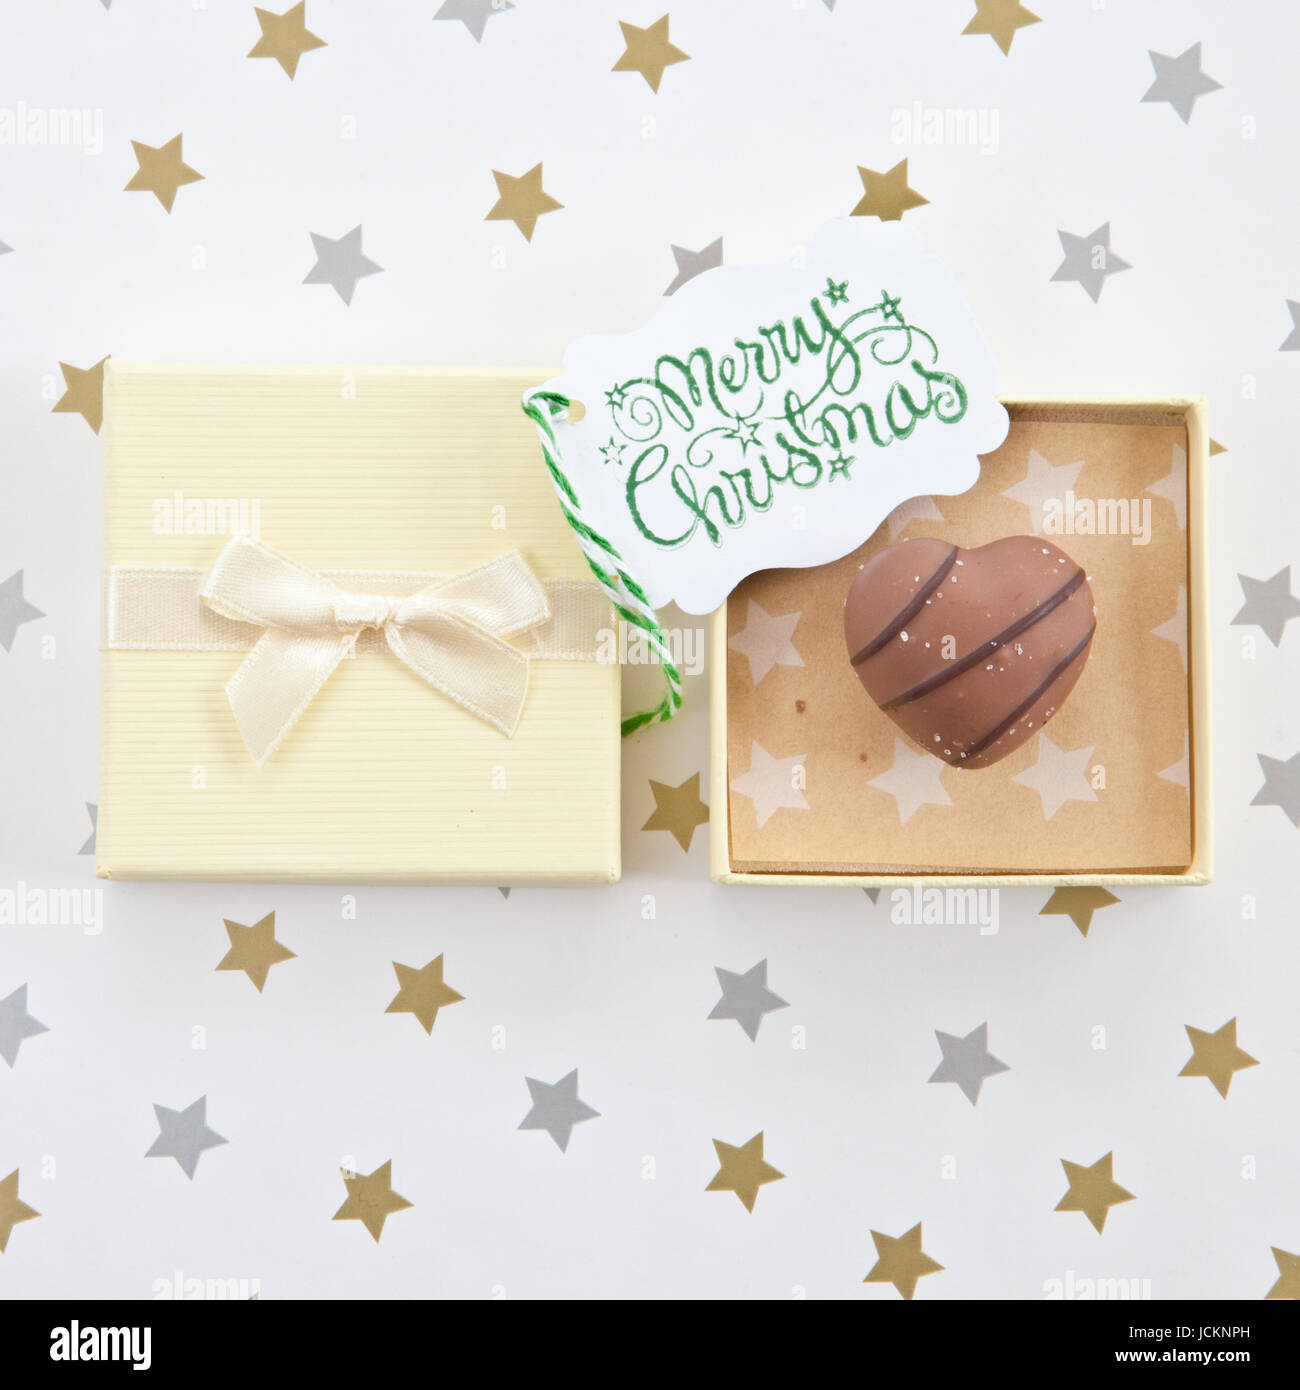 Herzfoermige Praline, Trueffel in Geschenkbox zu Weihnachten Stock Photo